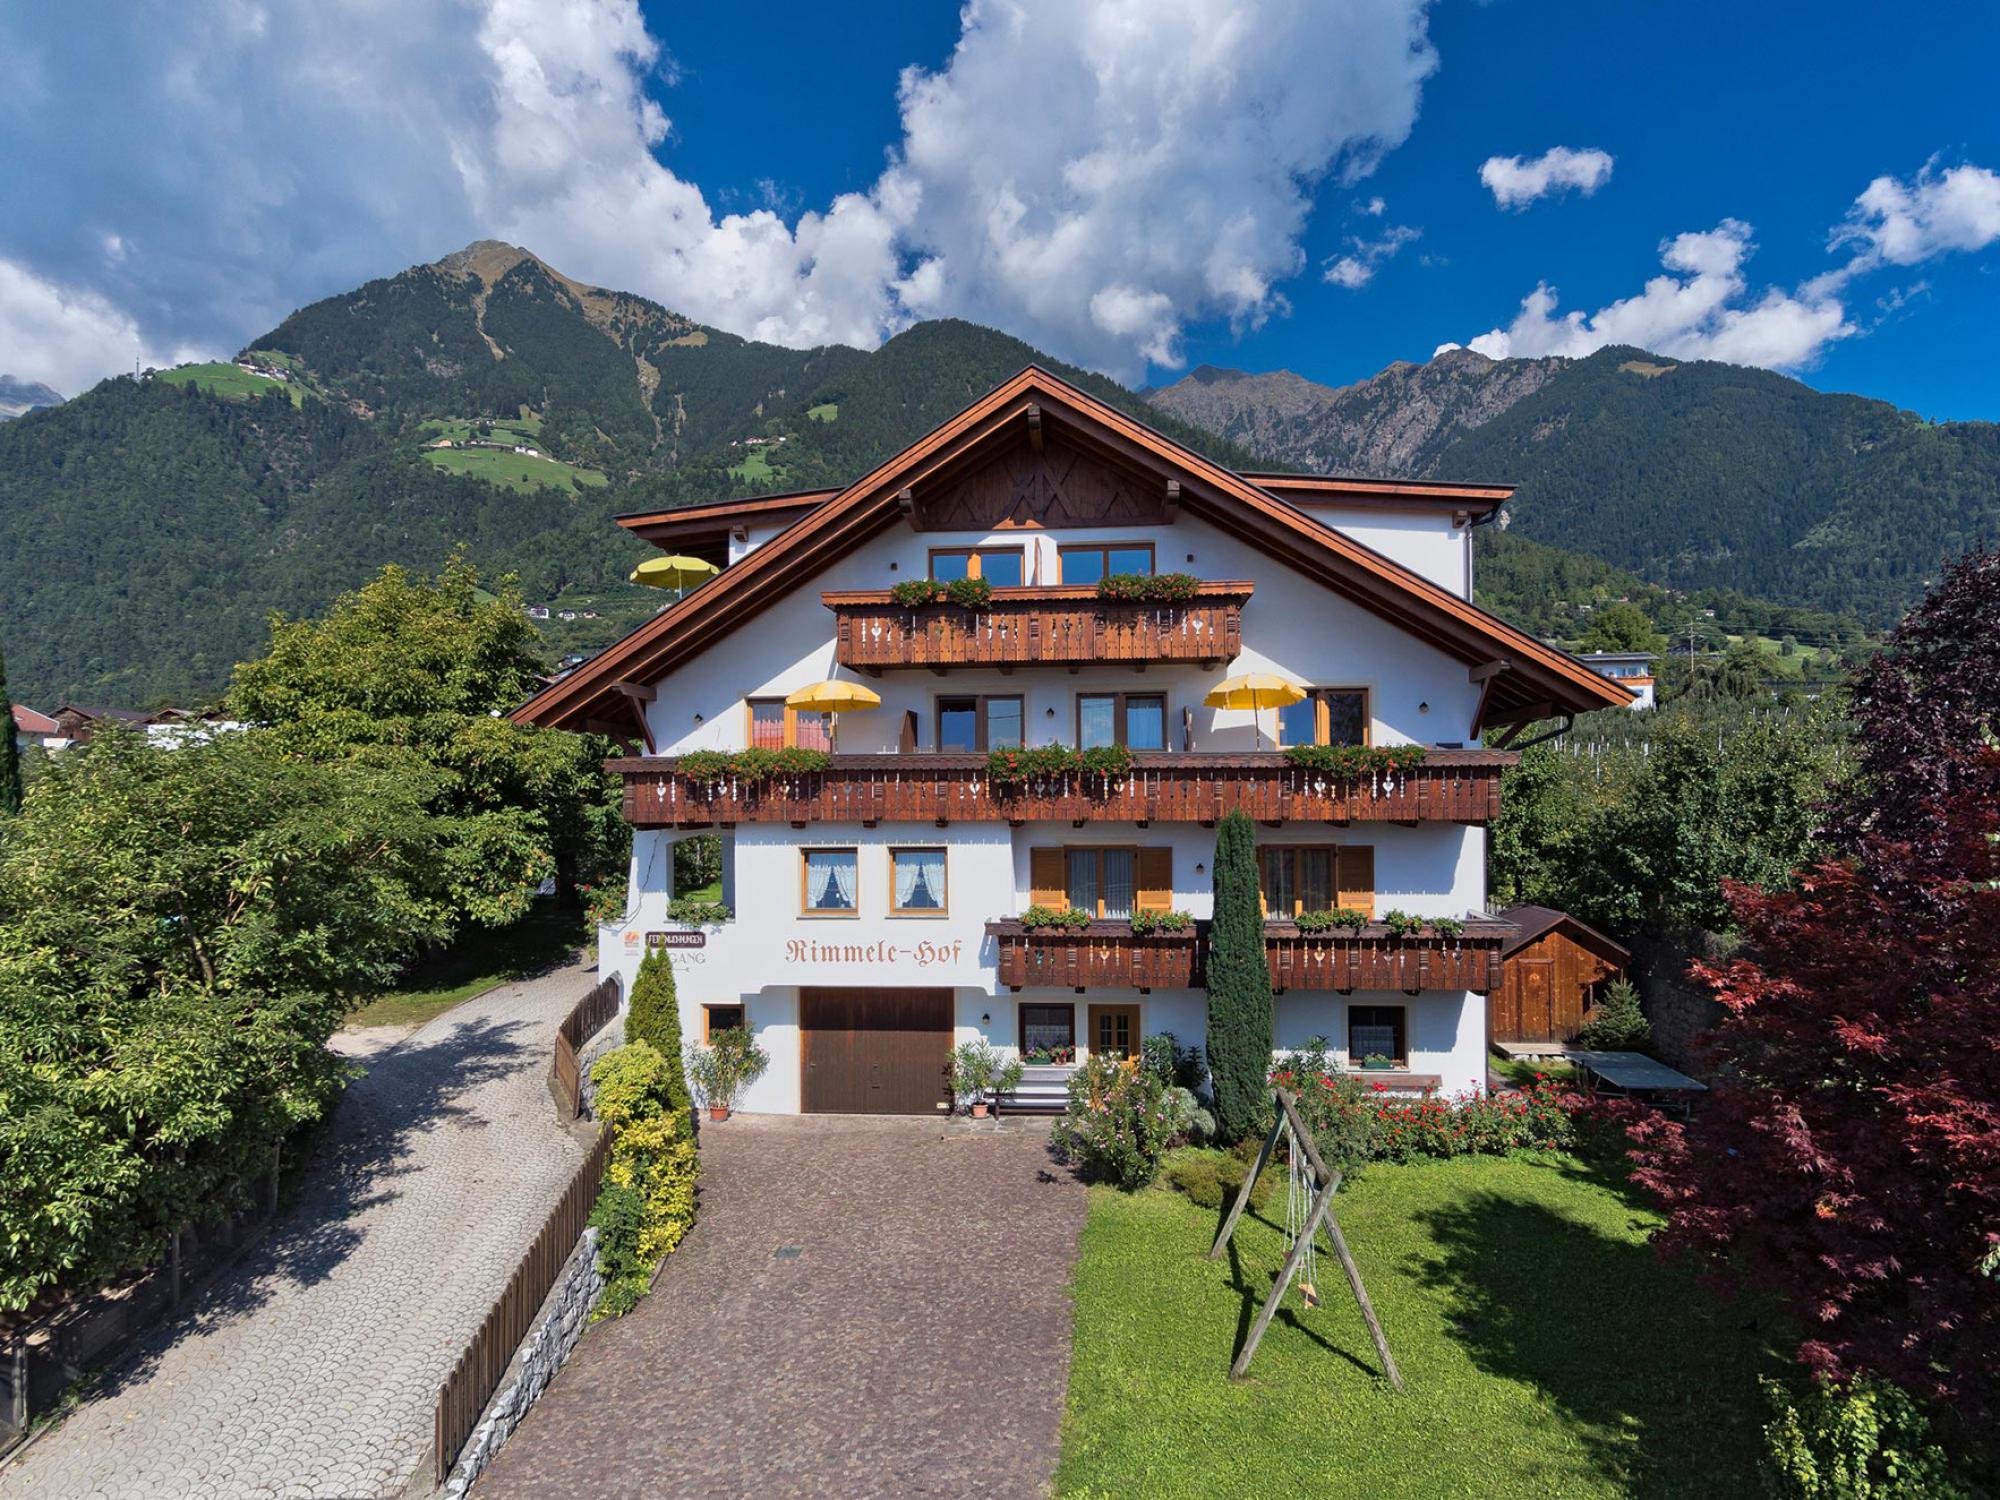 Rimmele-Hof in Dorf Tirol